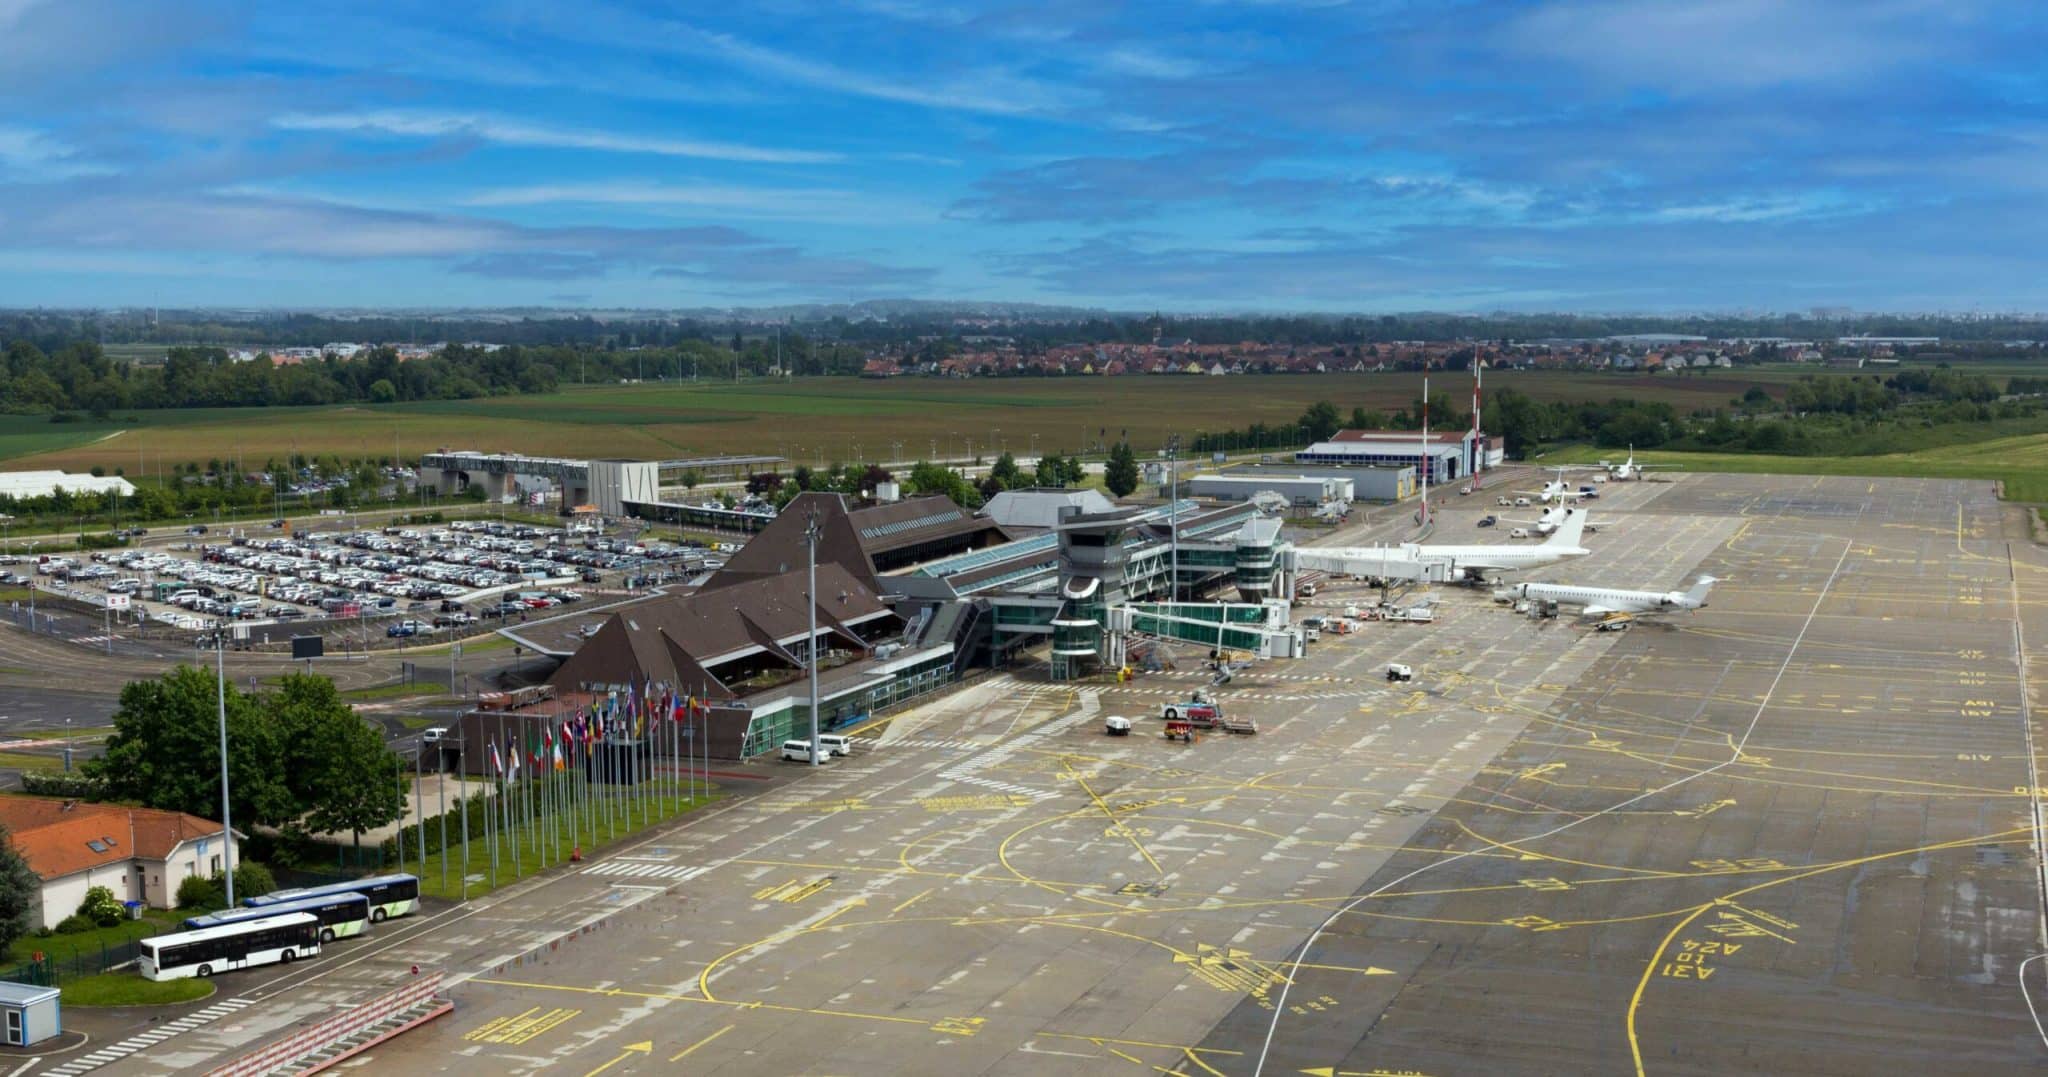 Аэропорт Страсбурга закрыт с 14 марта по 14 апреля на ремонт взлетно-посадочной полосы.